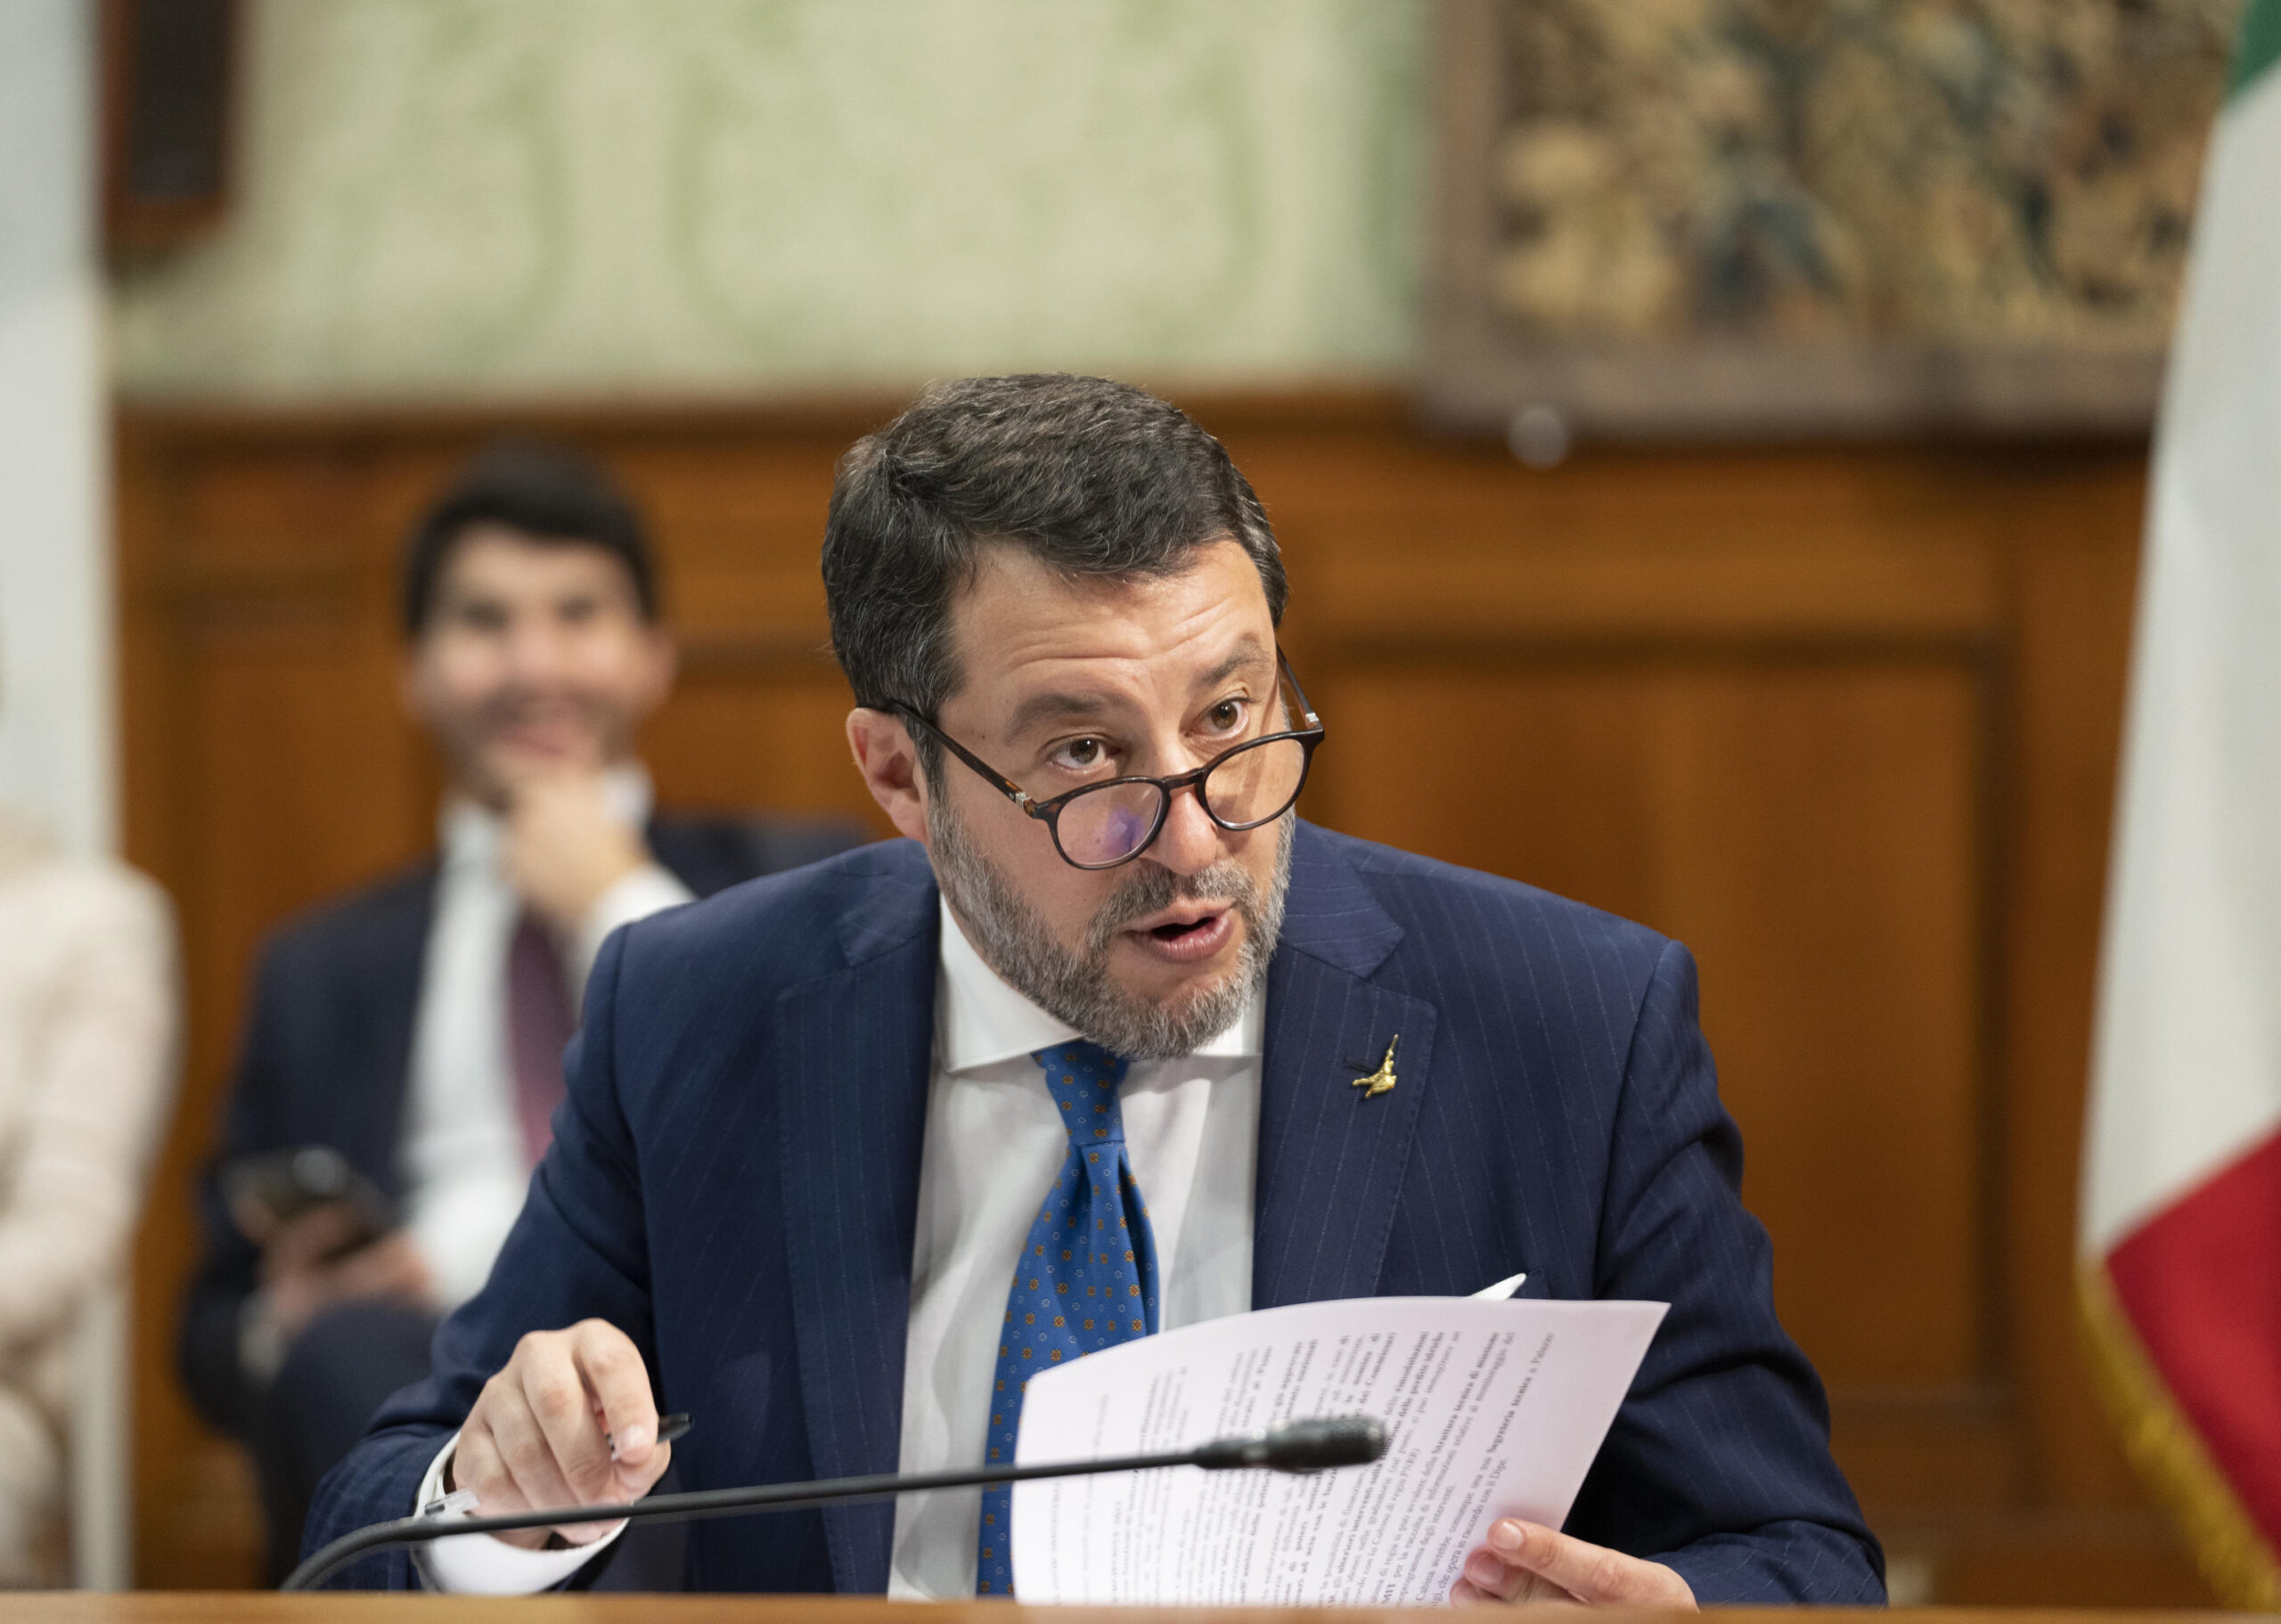 Canone Rai, Salvini torna all’attacco: “Il servizio pubblico lo fanno altre realtà”